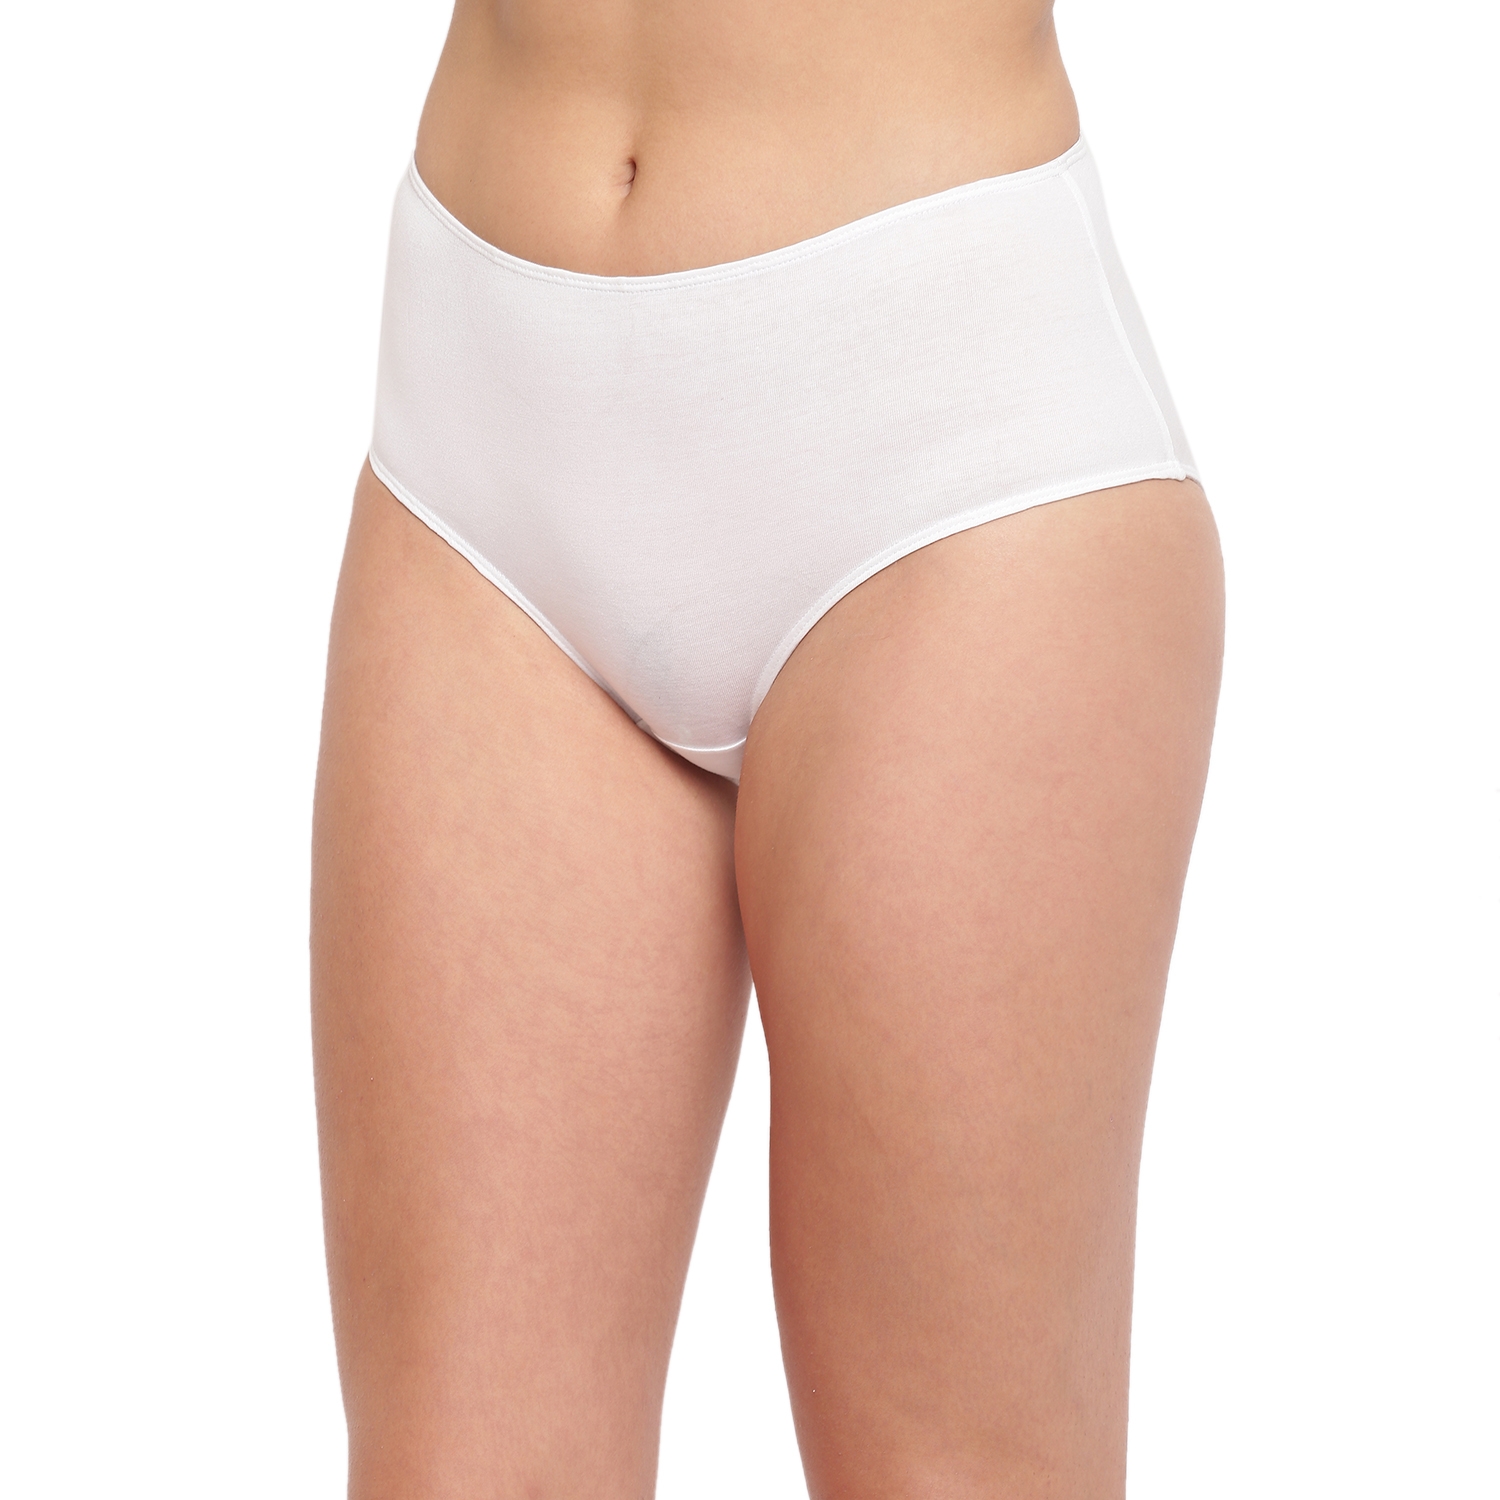 BASIICS by La Intimo | White Grace Well Bikini Panty Pack of 3 2